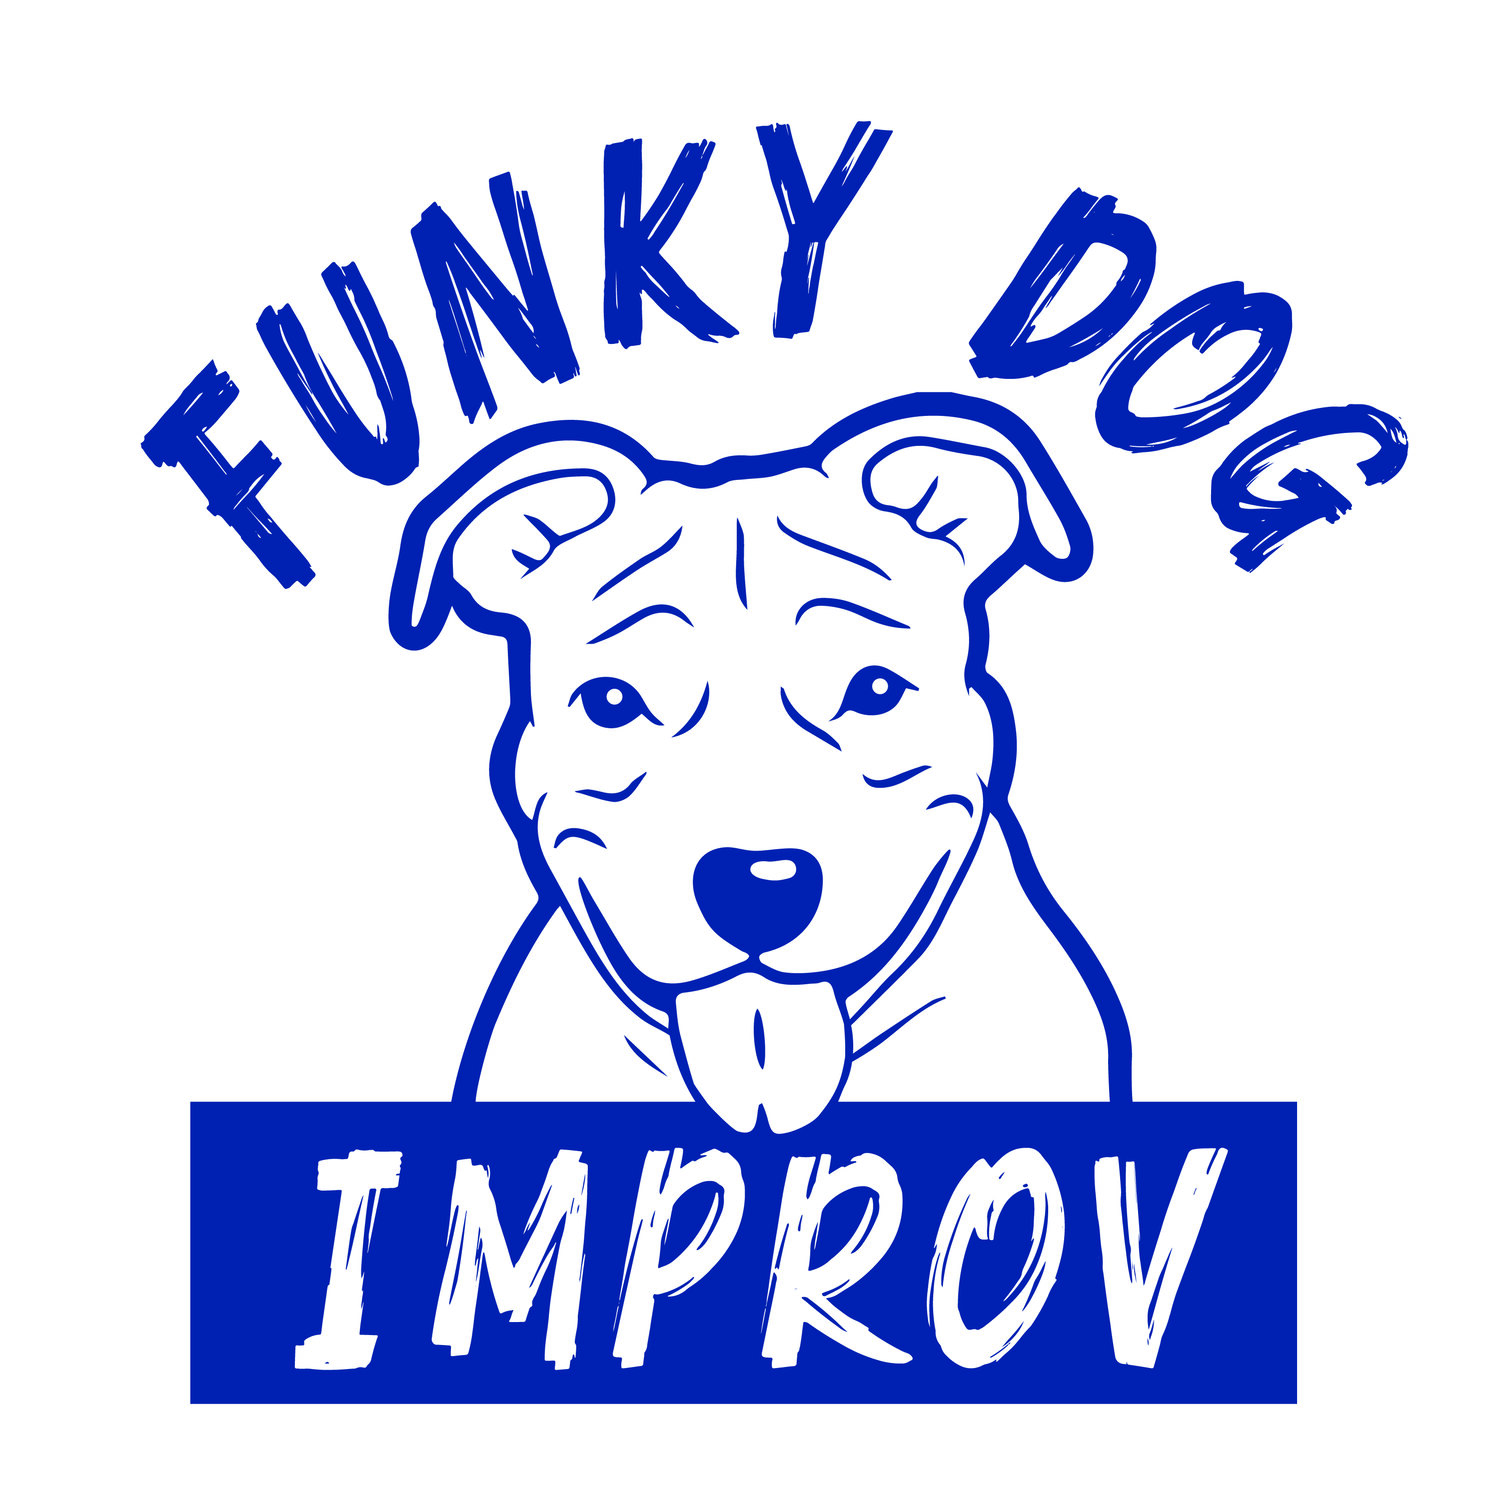 Funky Dog Improv